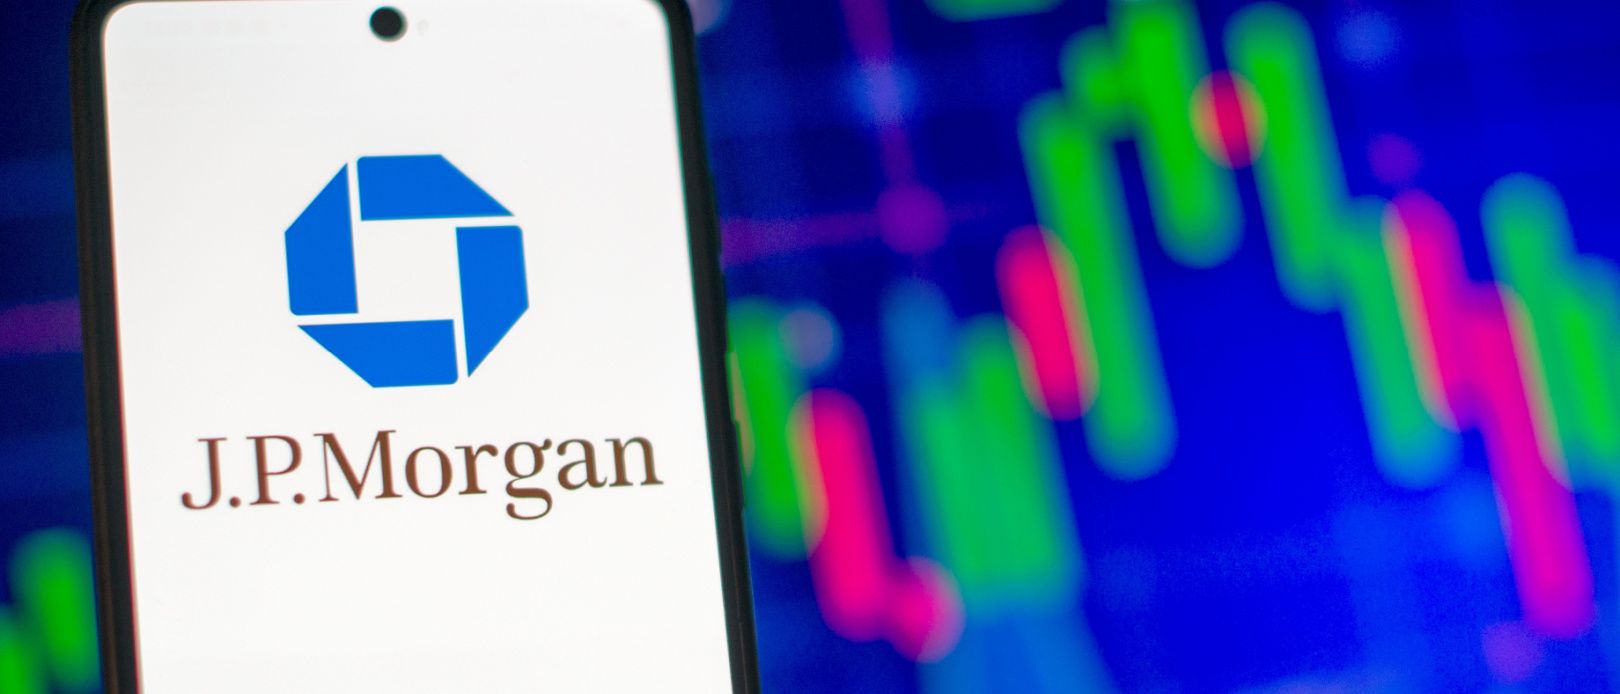 J.P. Morgan Self-Directed Investing review